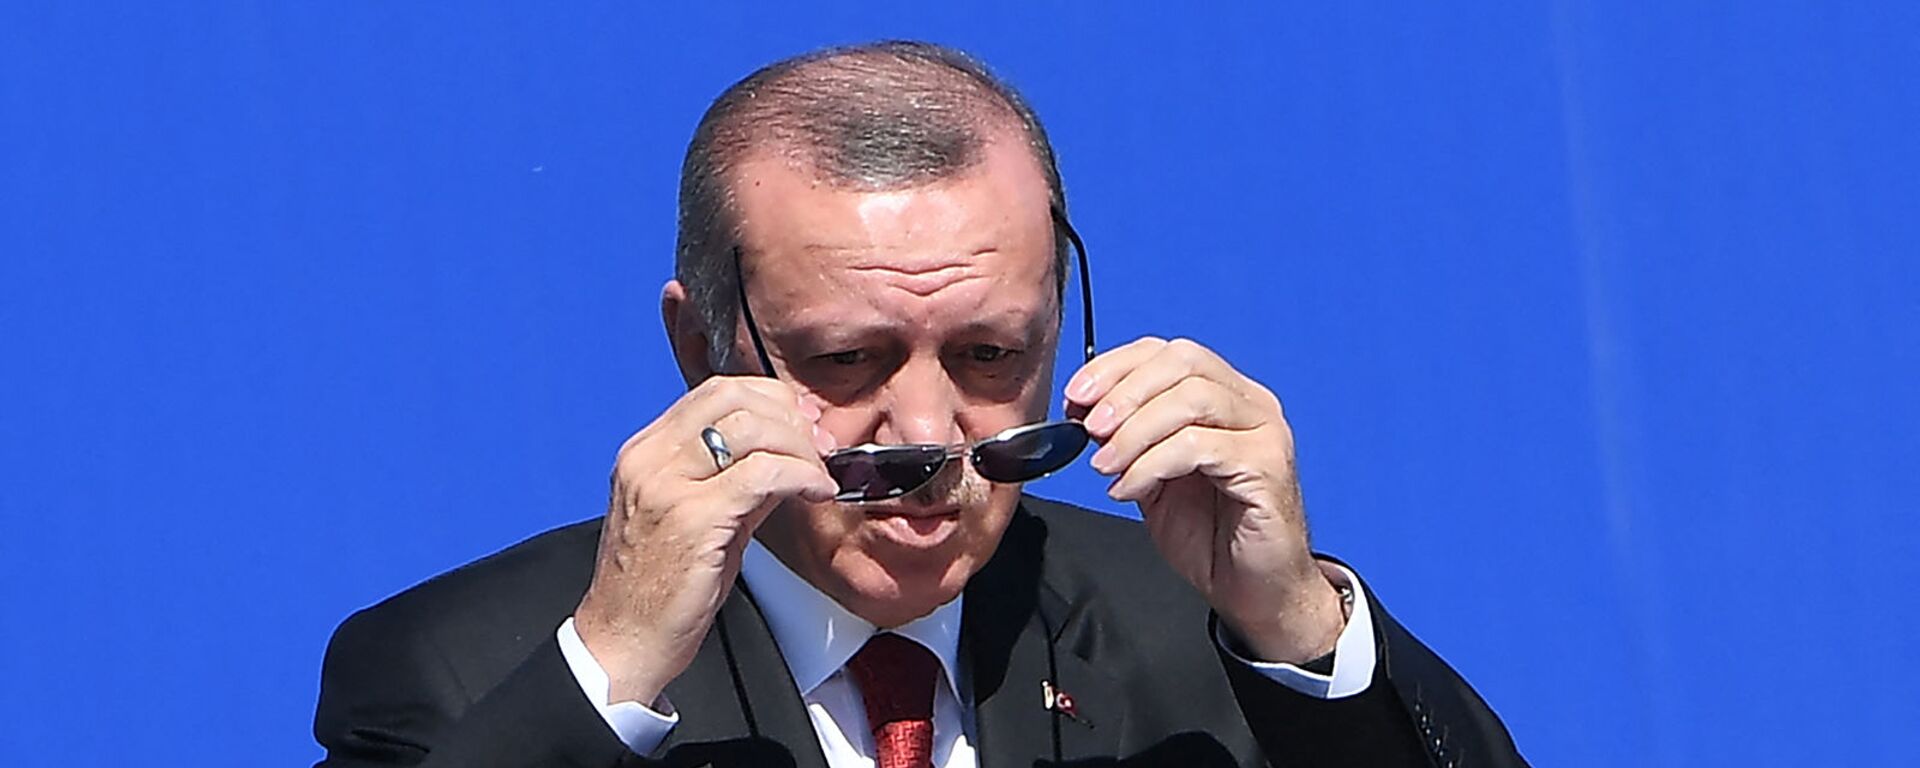 Президент Турции Реджеп Тайип Эрдоган надевает солнечные очки по прибытии на саммит НАТО (25 мая 2017). Брюссель - Sputnik Արմենիա, 1920, 03.09.2021